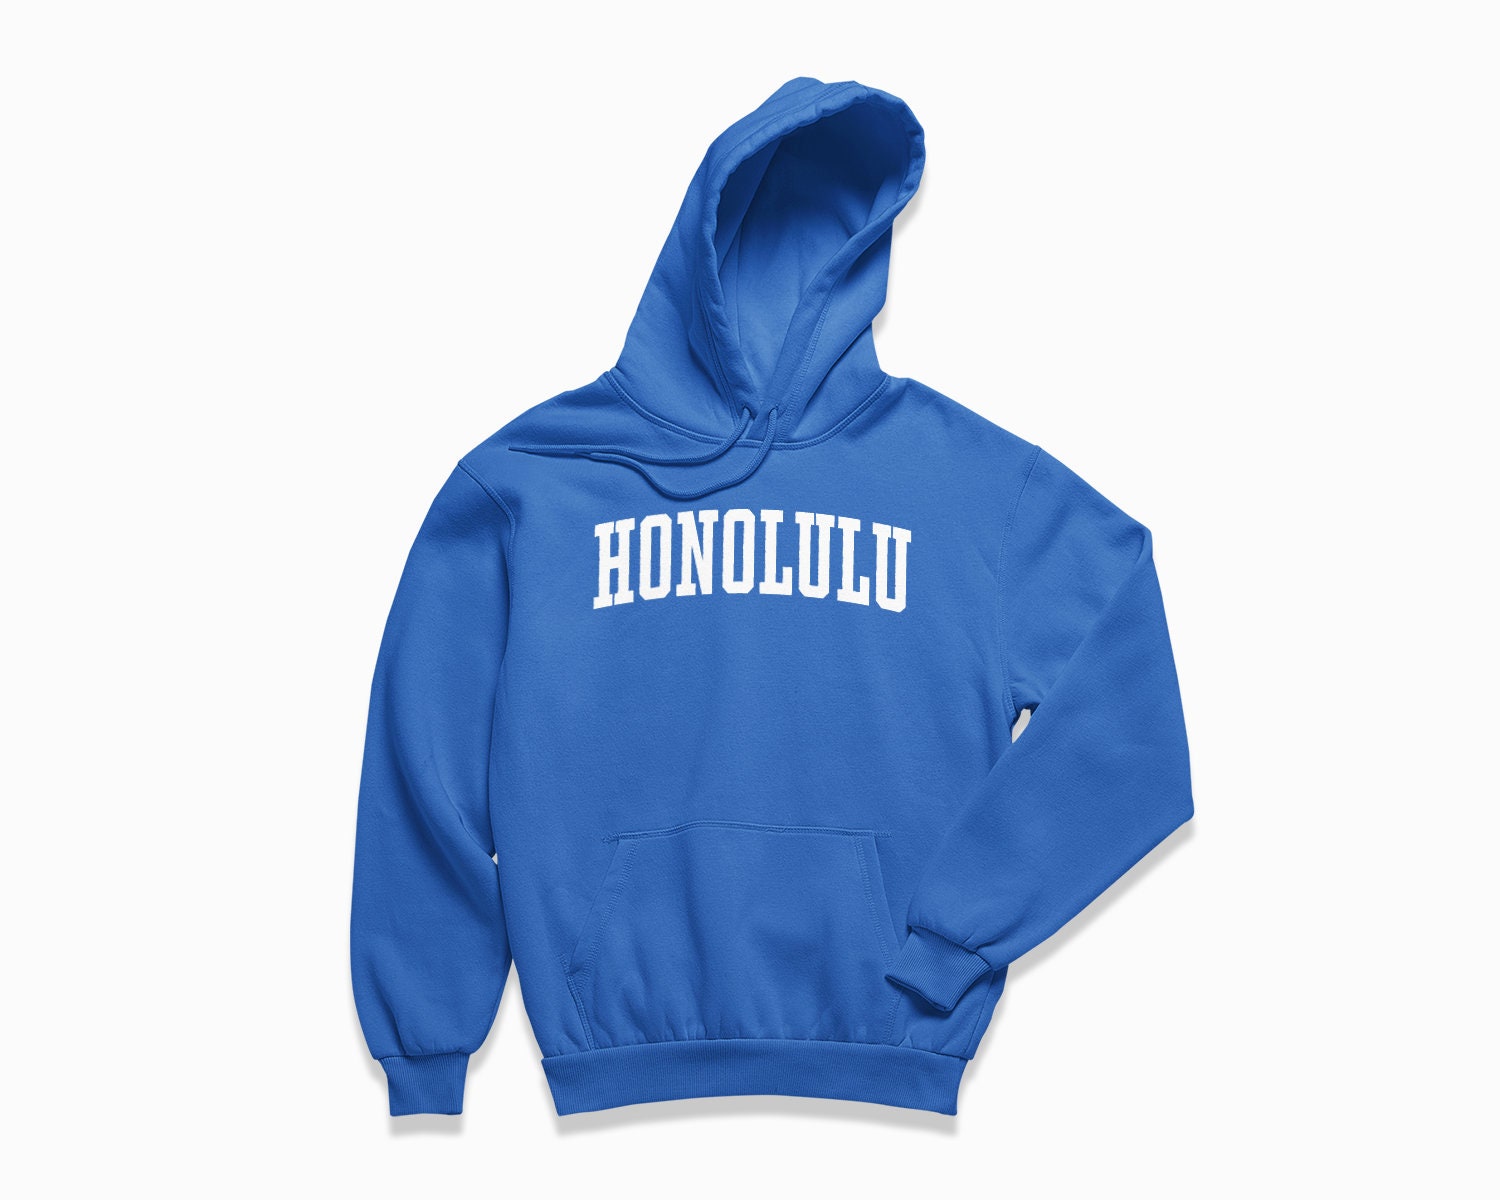 Honolulu Hoodie: Honolulu Hawaii Hooded Sweatshirt / College | Etsy